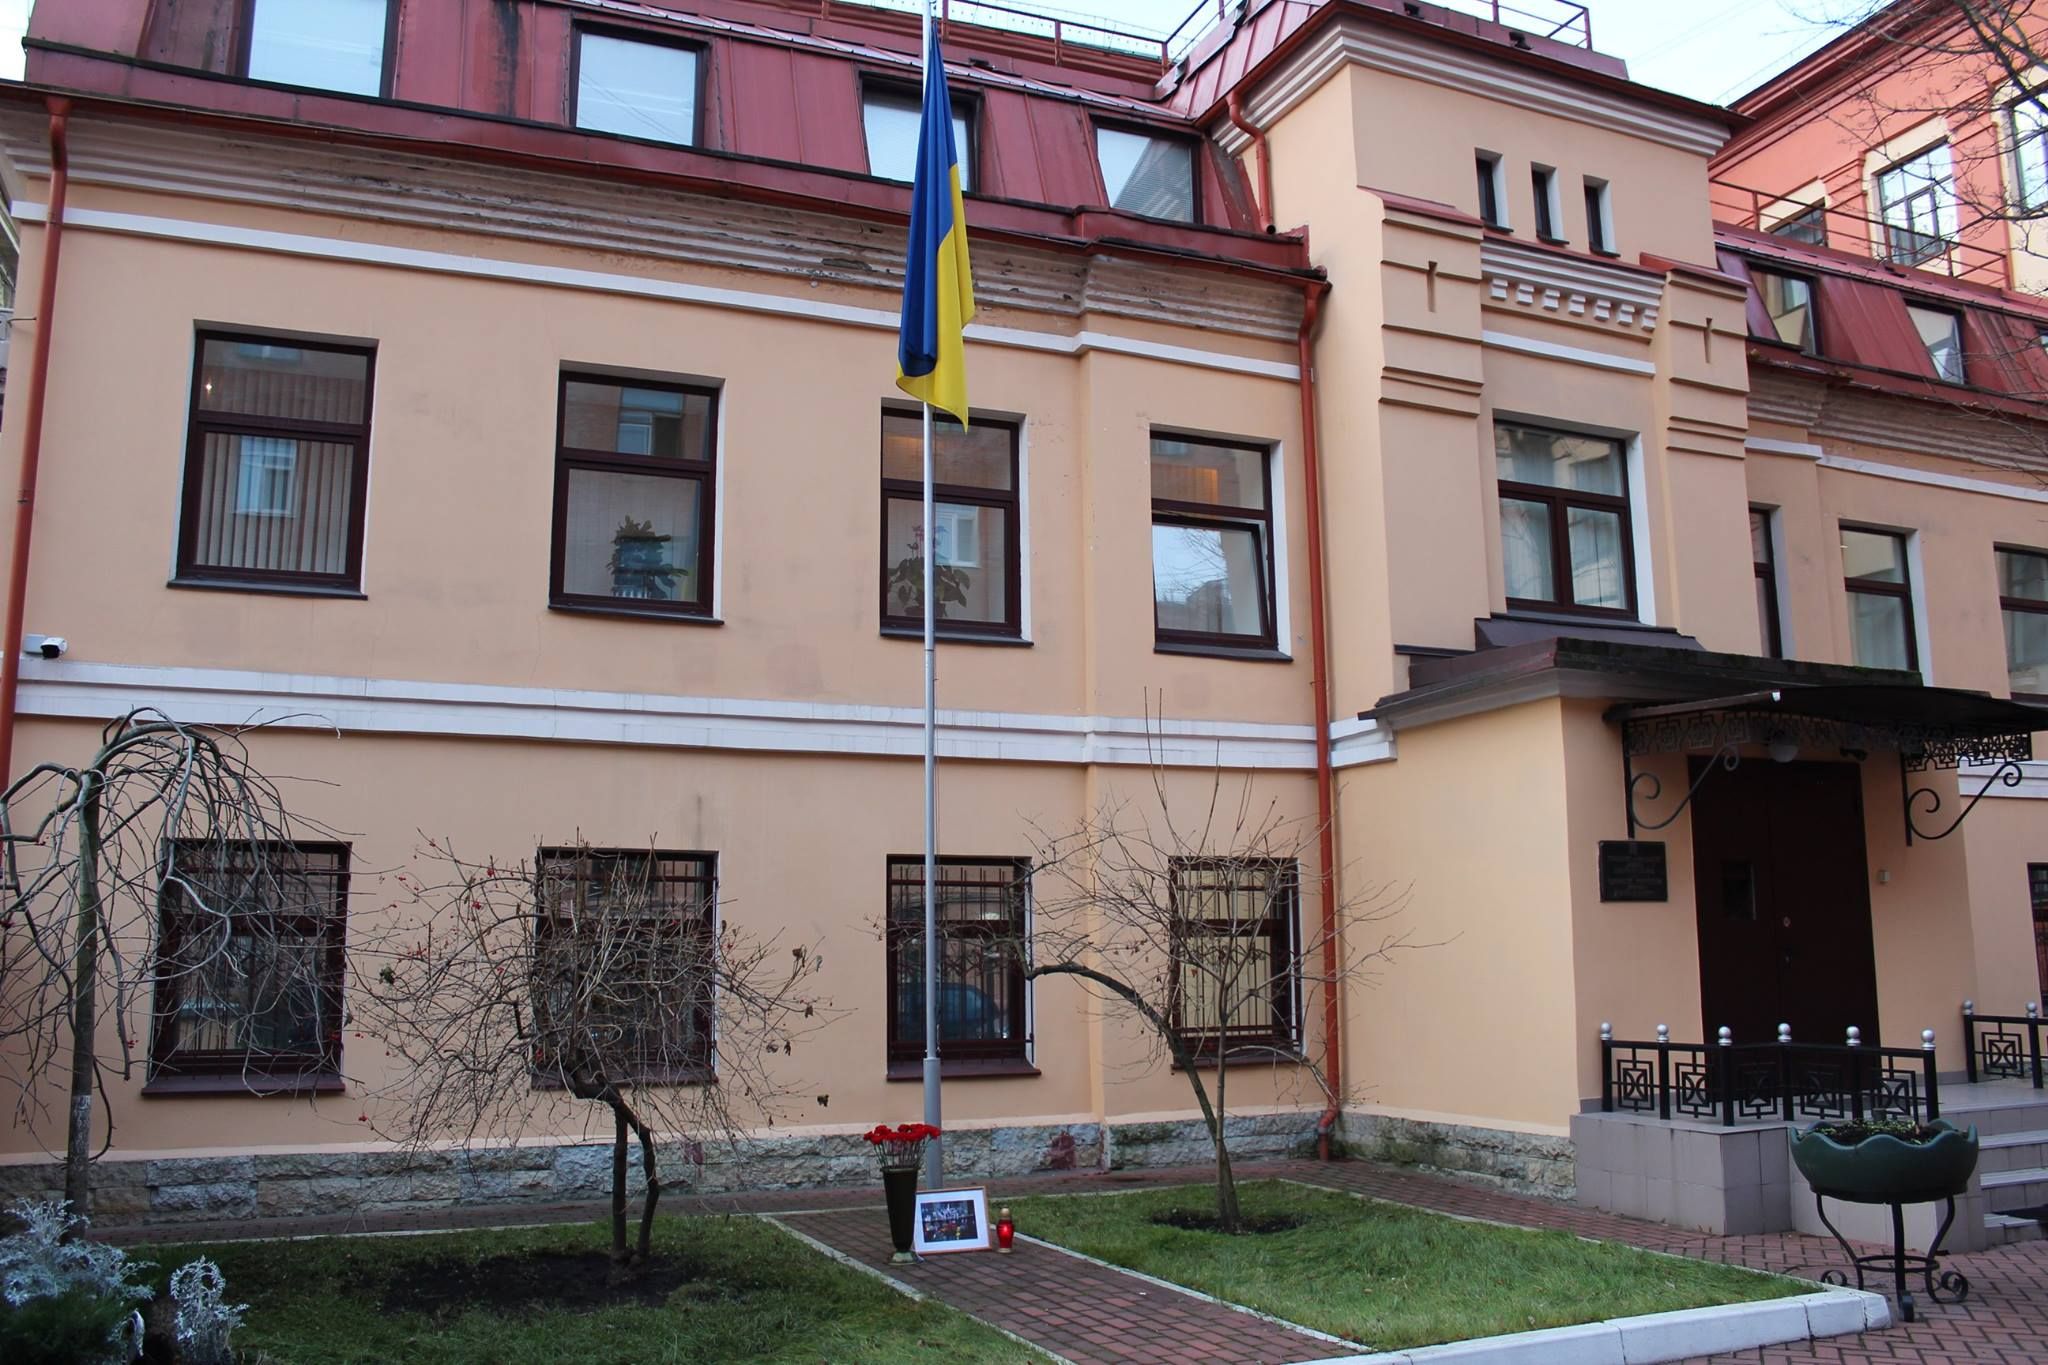 Український консул Олександр Сосонюк має виїхати з Росії протягом трьох діб